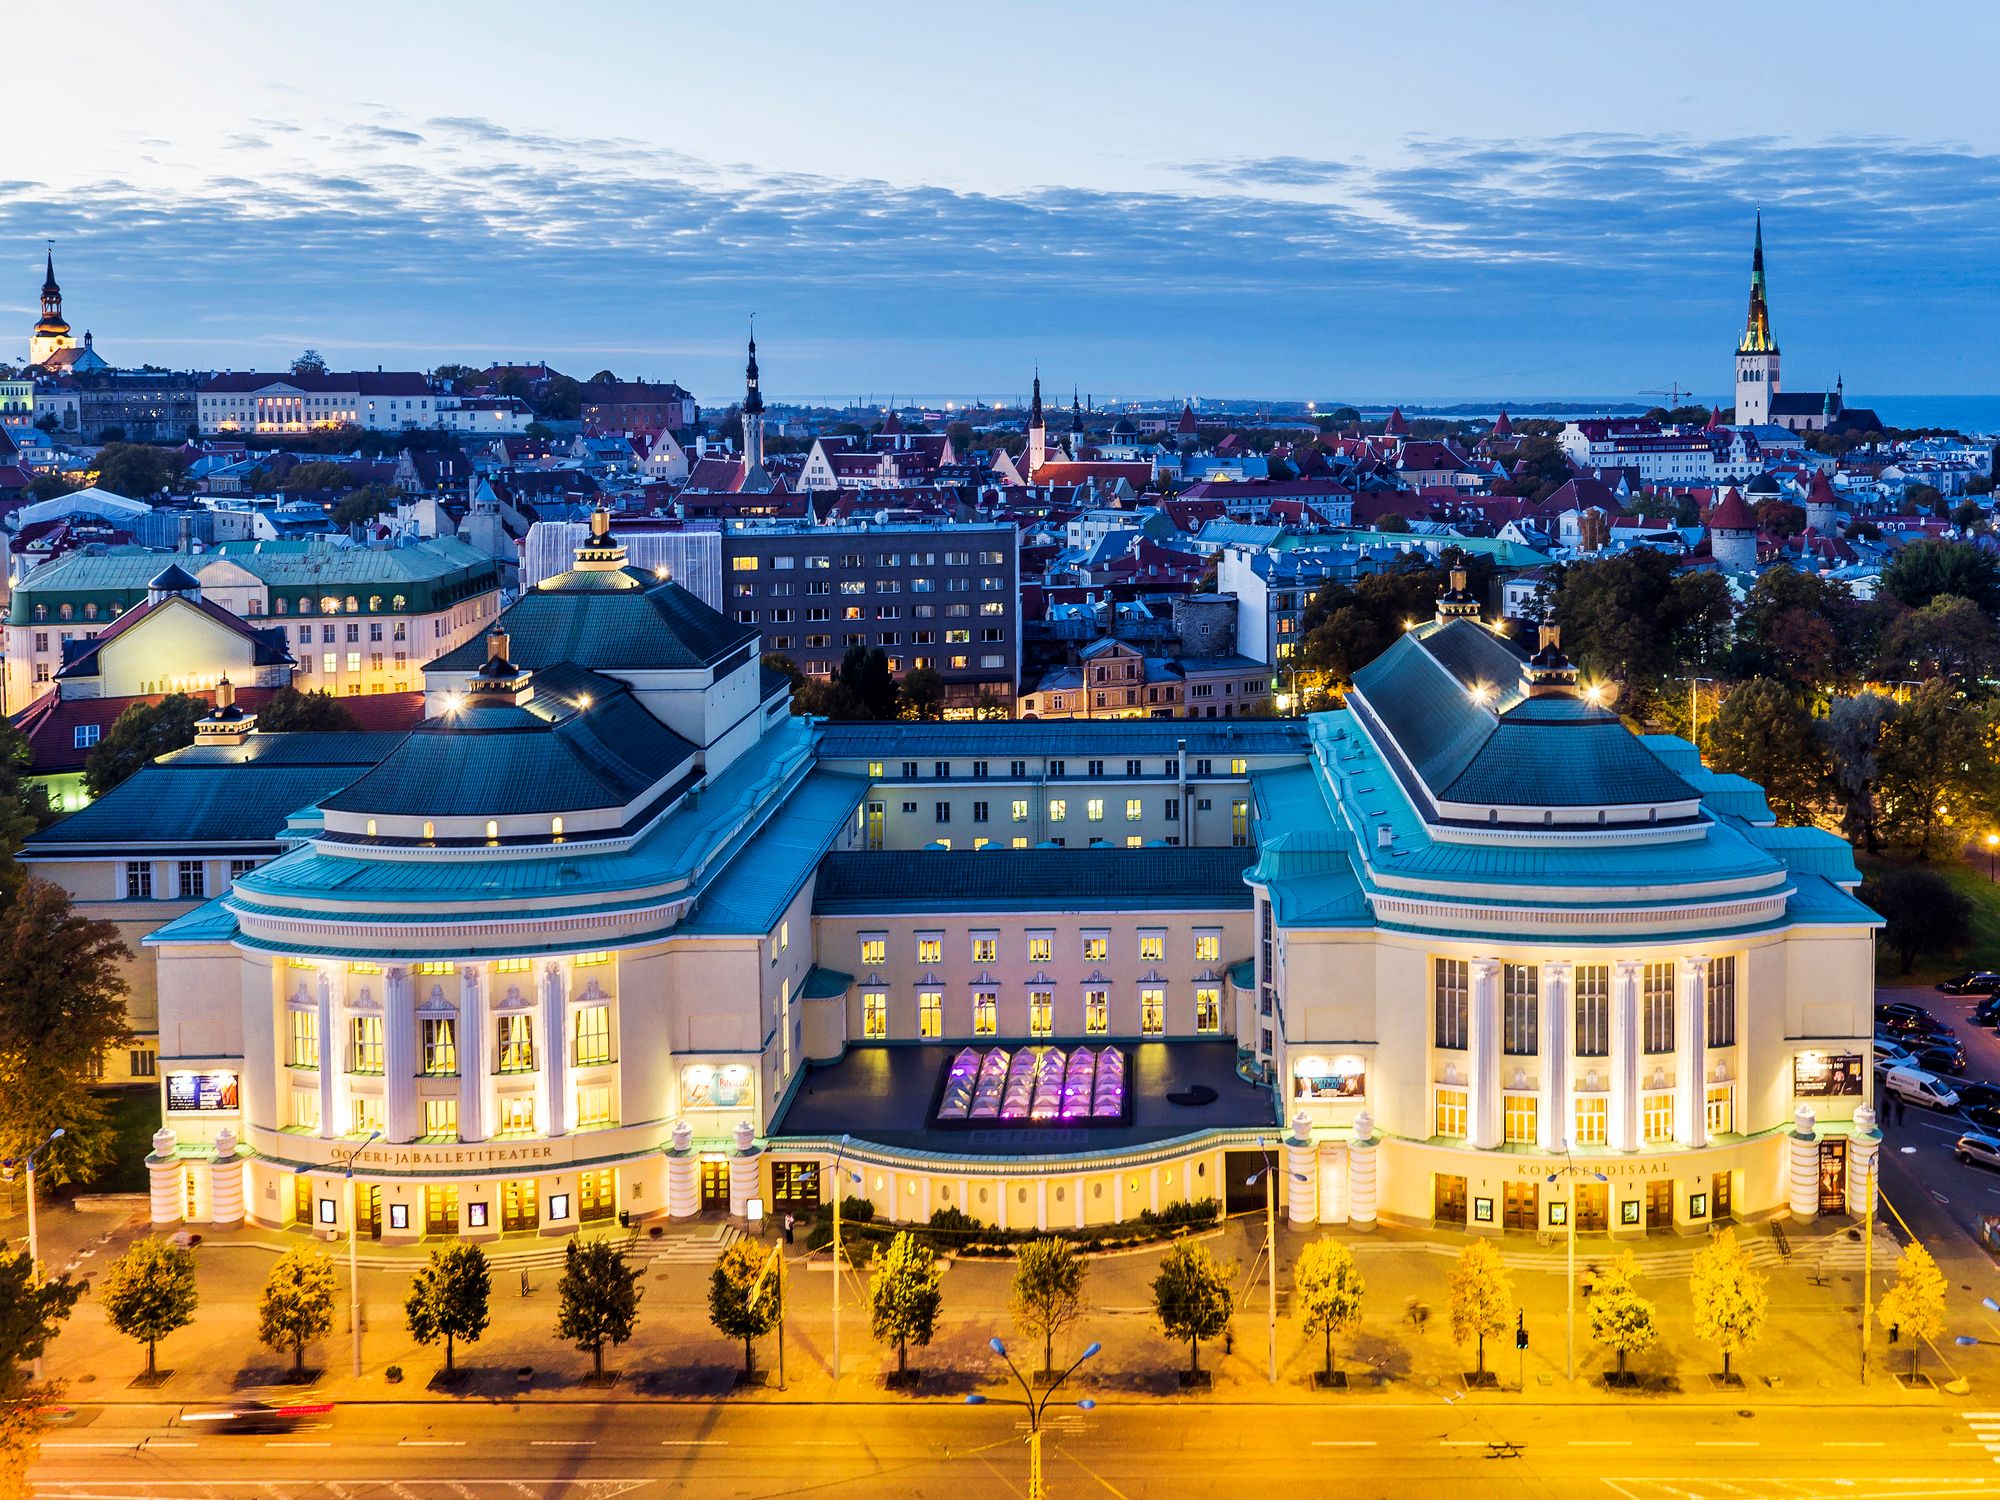 Estonia-teatteri ja -konserttisali ovat tuttuja suomalaisillekin usean vuosikymmenen ajalta.